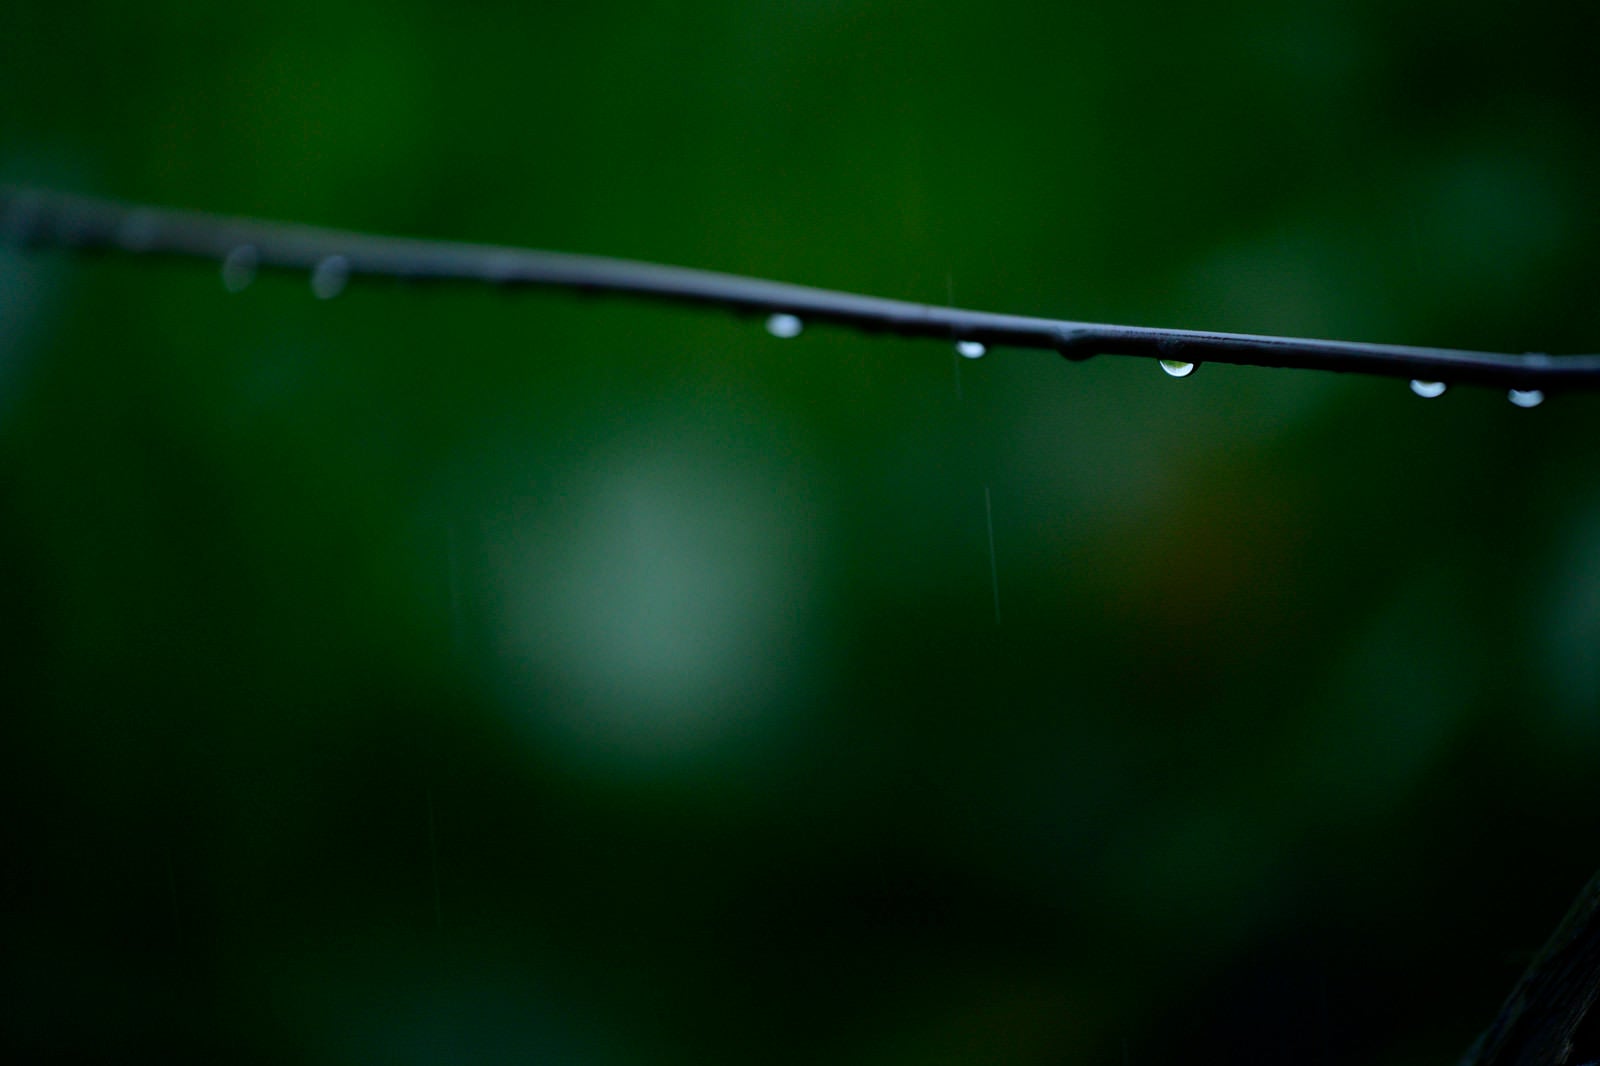 「金網から滴る水滴」の写真